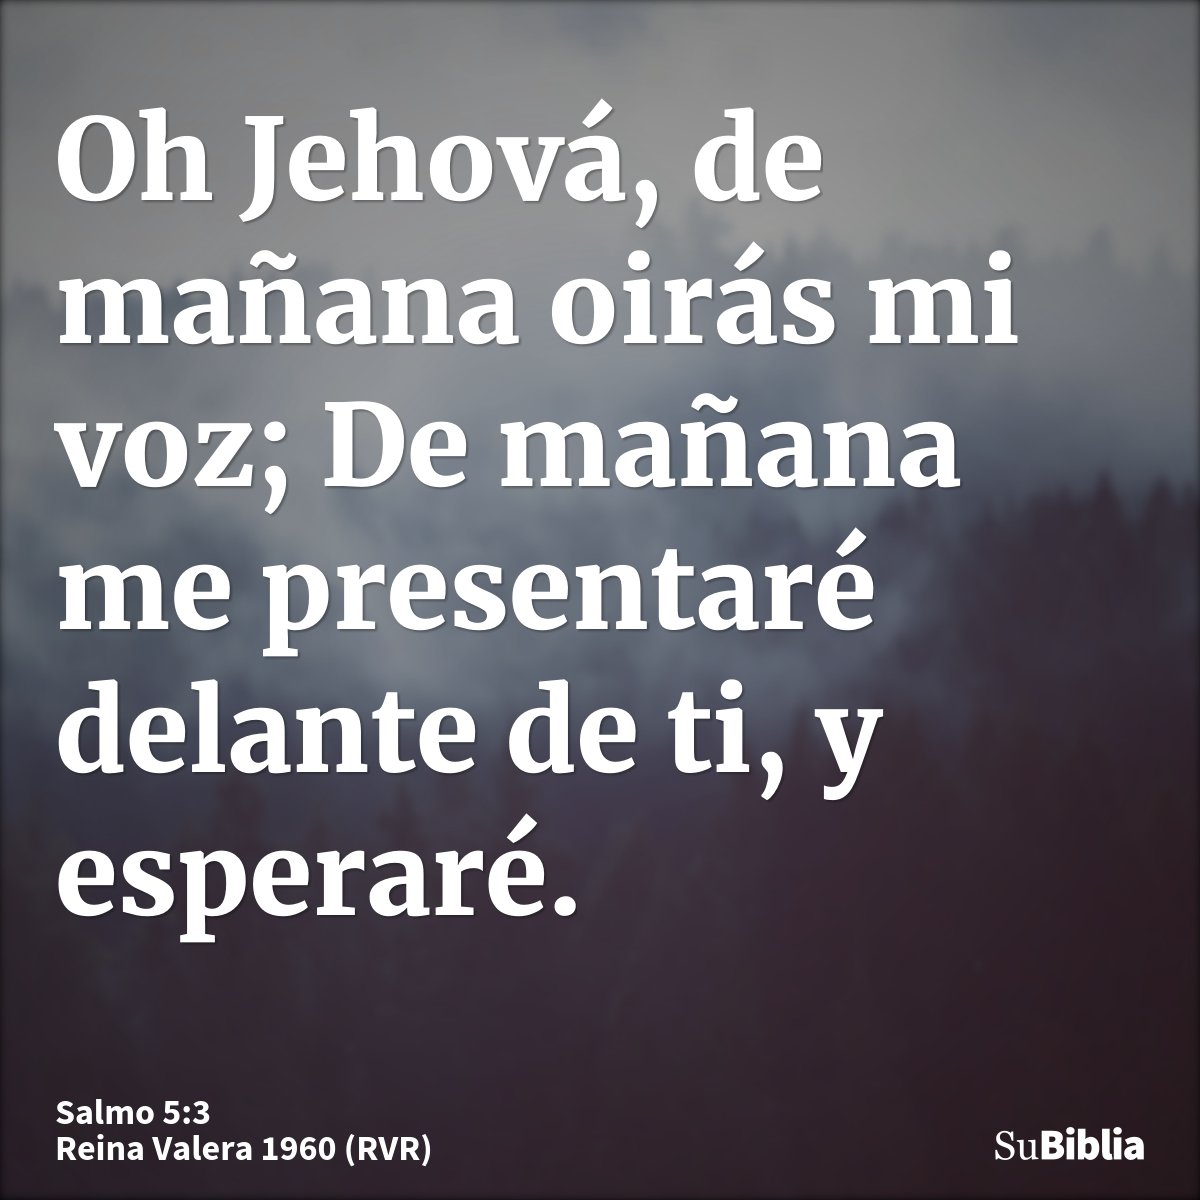 Oh Jehová, de mañana oirás mi voz; De mañana me presentaré delante de ti, y esperaré.